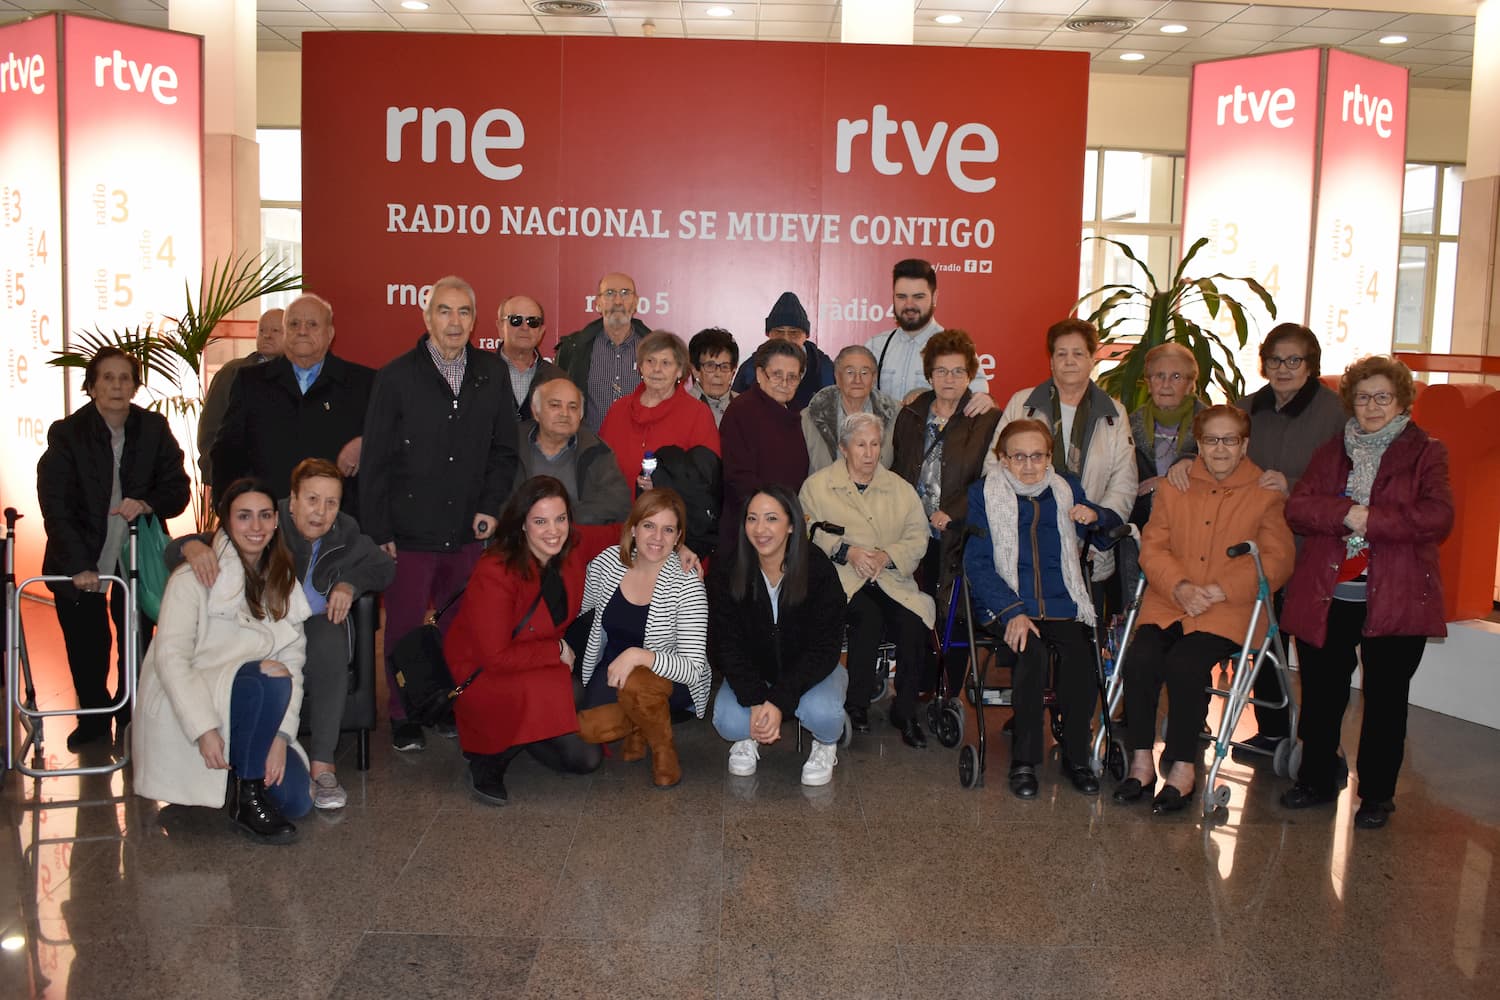 residencias de ancianos privadas celebran dia de la radio